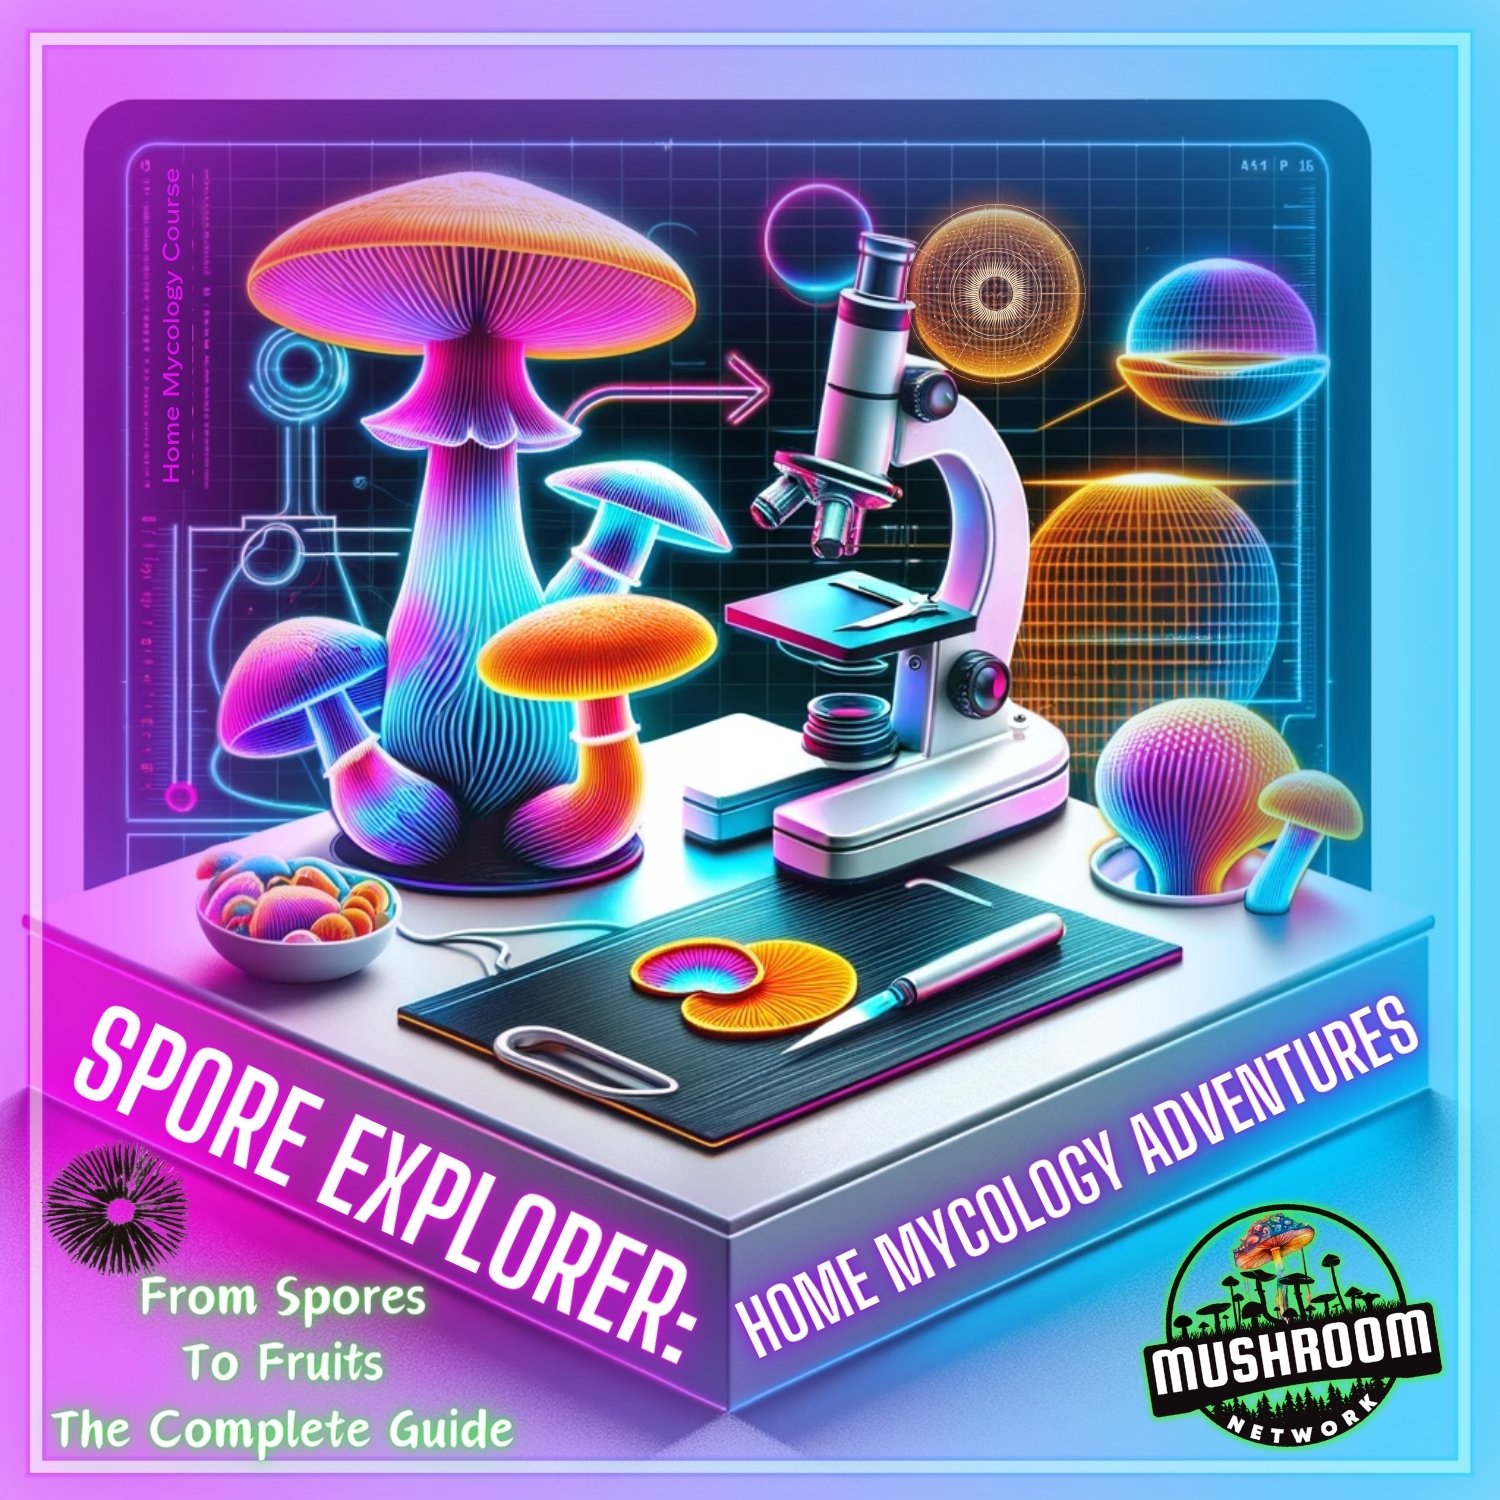 Spore Explorer: Home Mycology Adventures